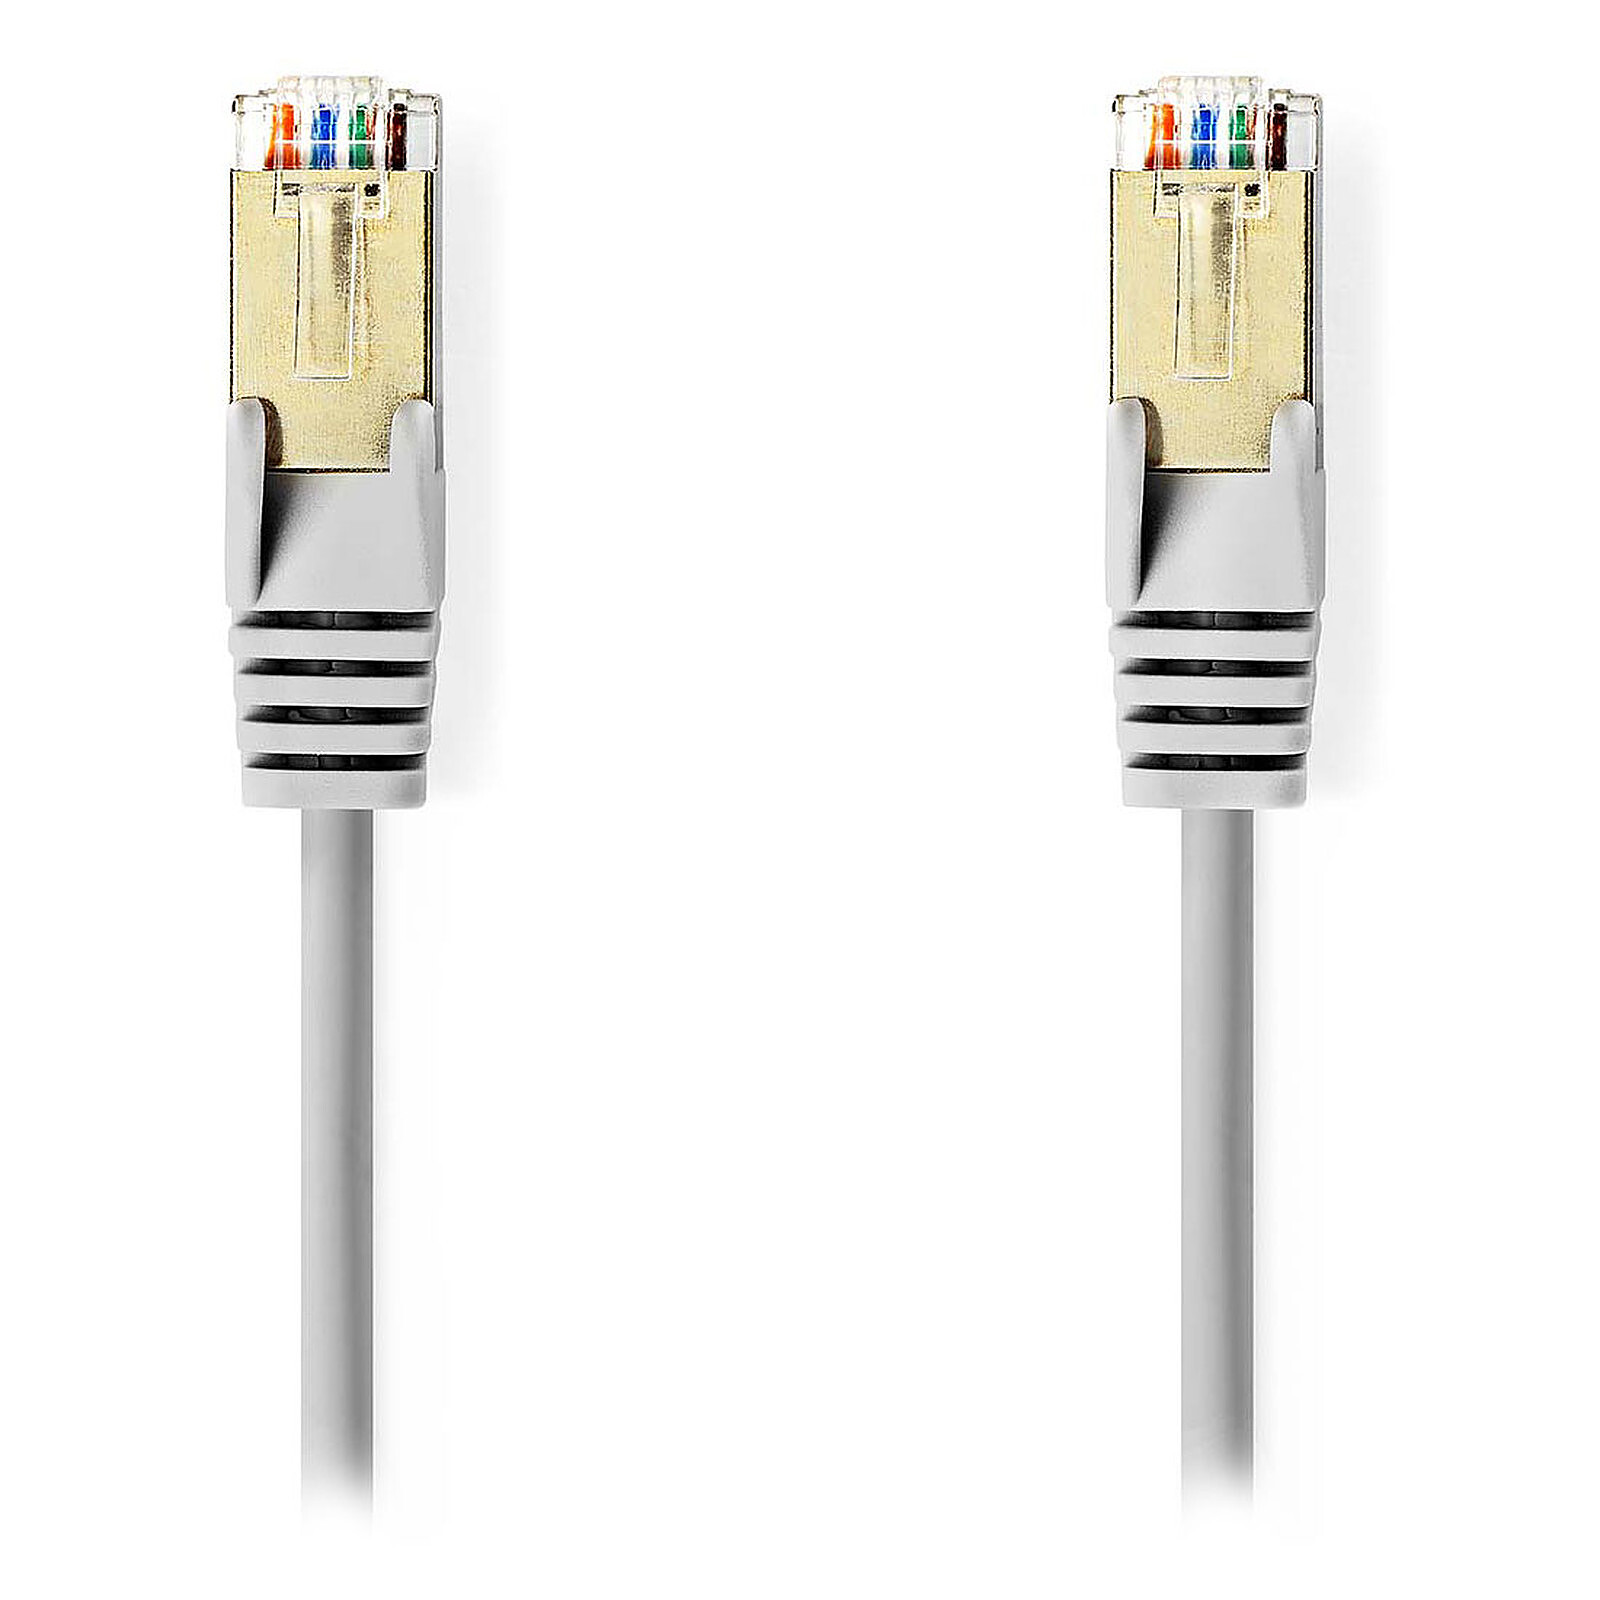 Câble connection RJ45 mâle/mâle gris 8 fils 1,00 m data video cord FTP Ethernet